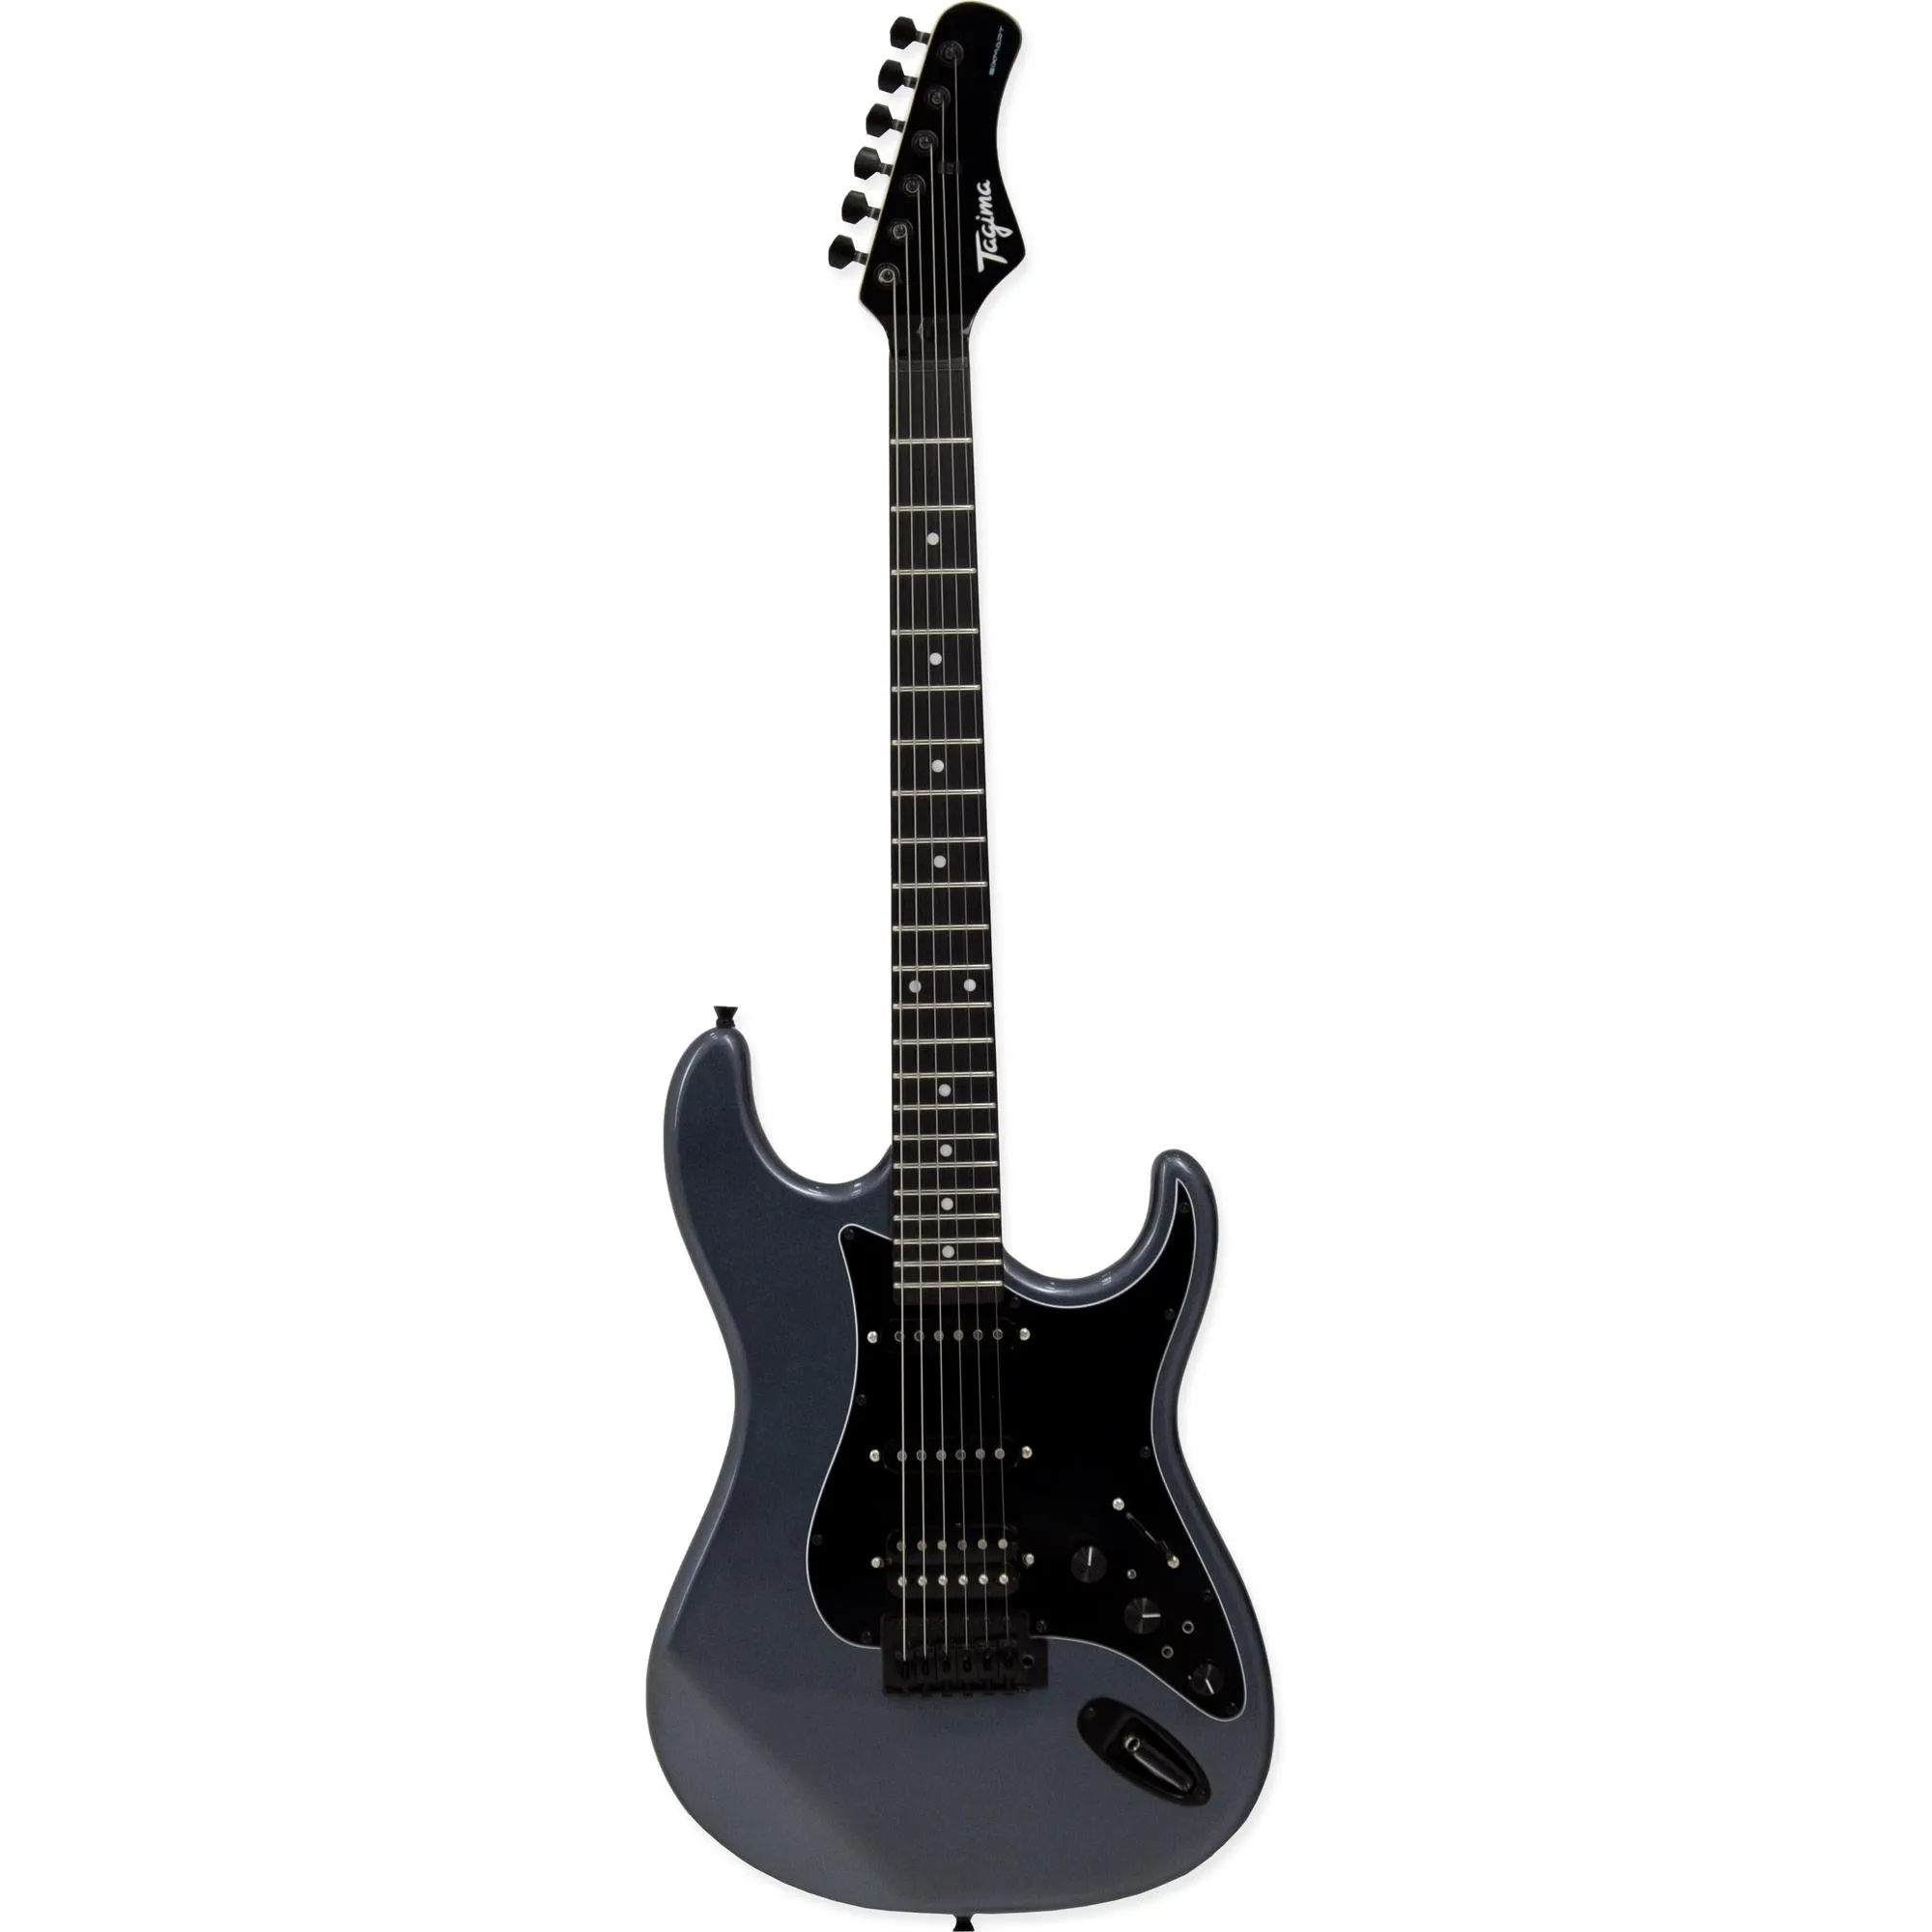 Guitarra Tagima Sixmart Metallic Deep Silver por 1.449,99 à vista no boleto/pix ou parcele em até 12x sem juros. Compre na loja Mundomax!